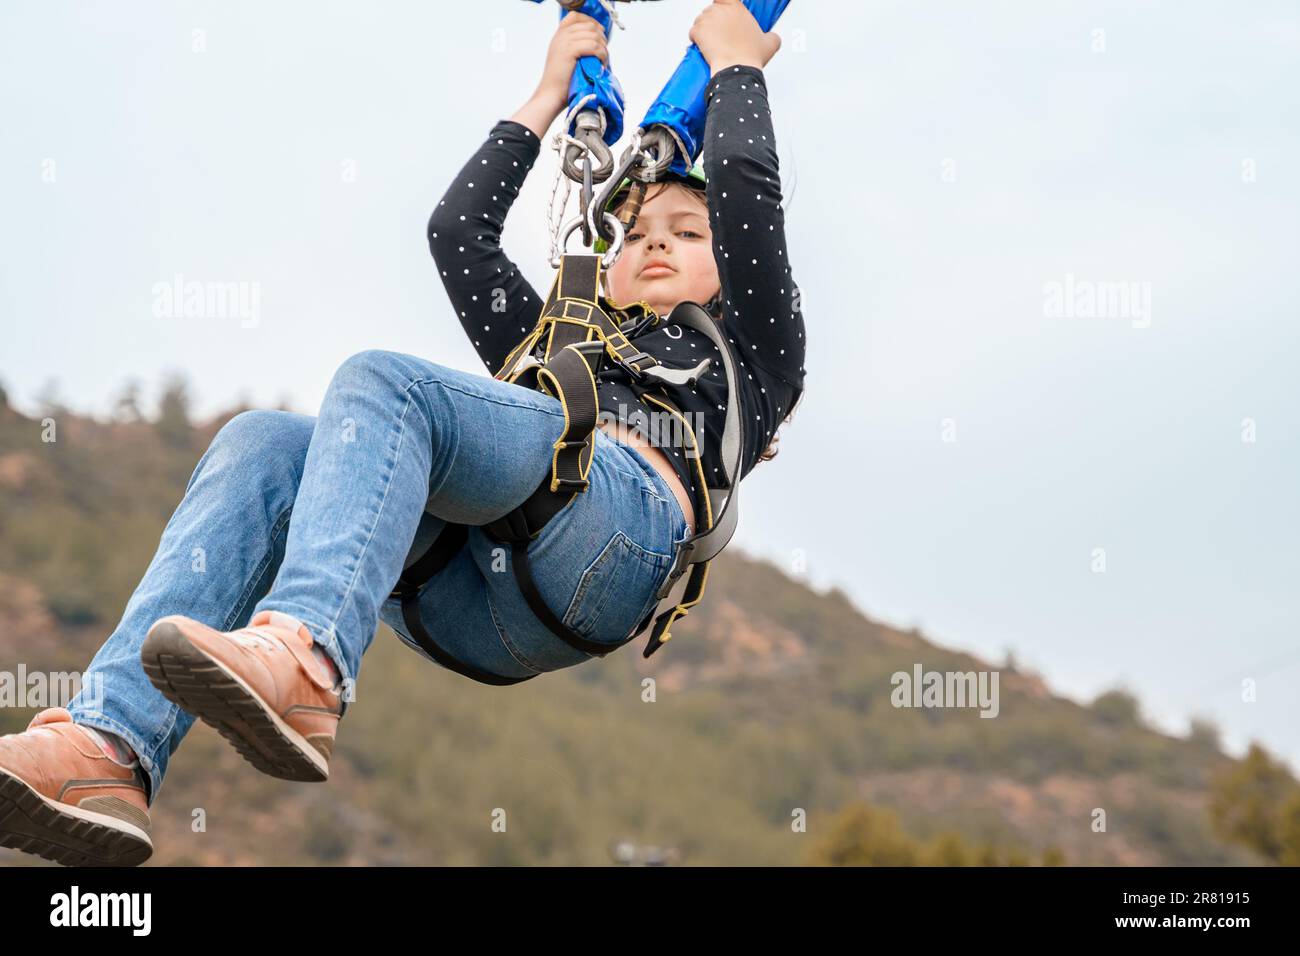 Teenager Mädchen Bungee fliegt im Seilpark. Klettergeschirr Ausrüstung, grüner Sportschutzhelm. Hindernislauf zum Aufhängen. Kinder Kinder Stockfoto